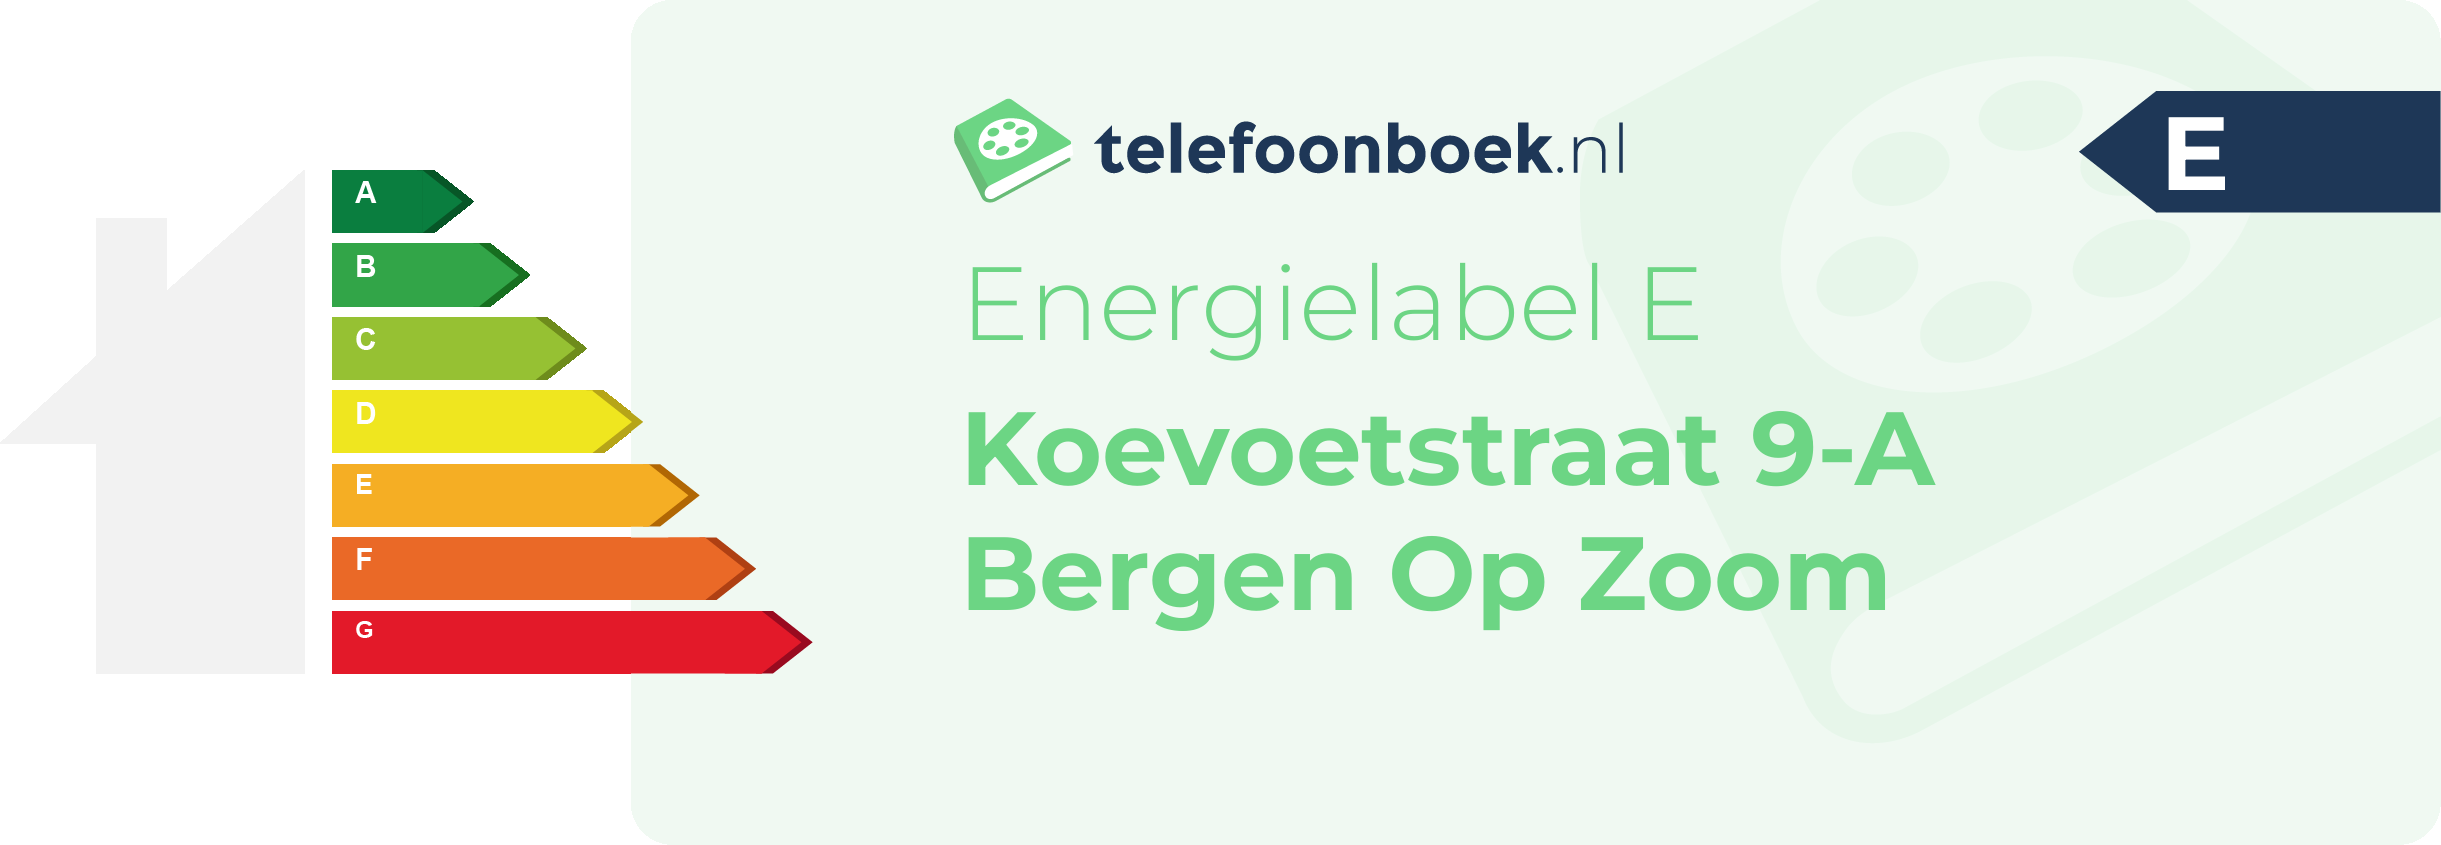 Energielabel Koevoetstraat 9-A Bergen Op Zoom